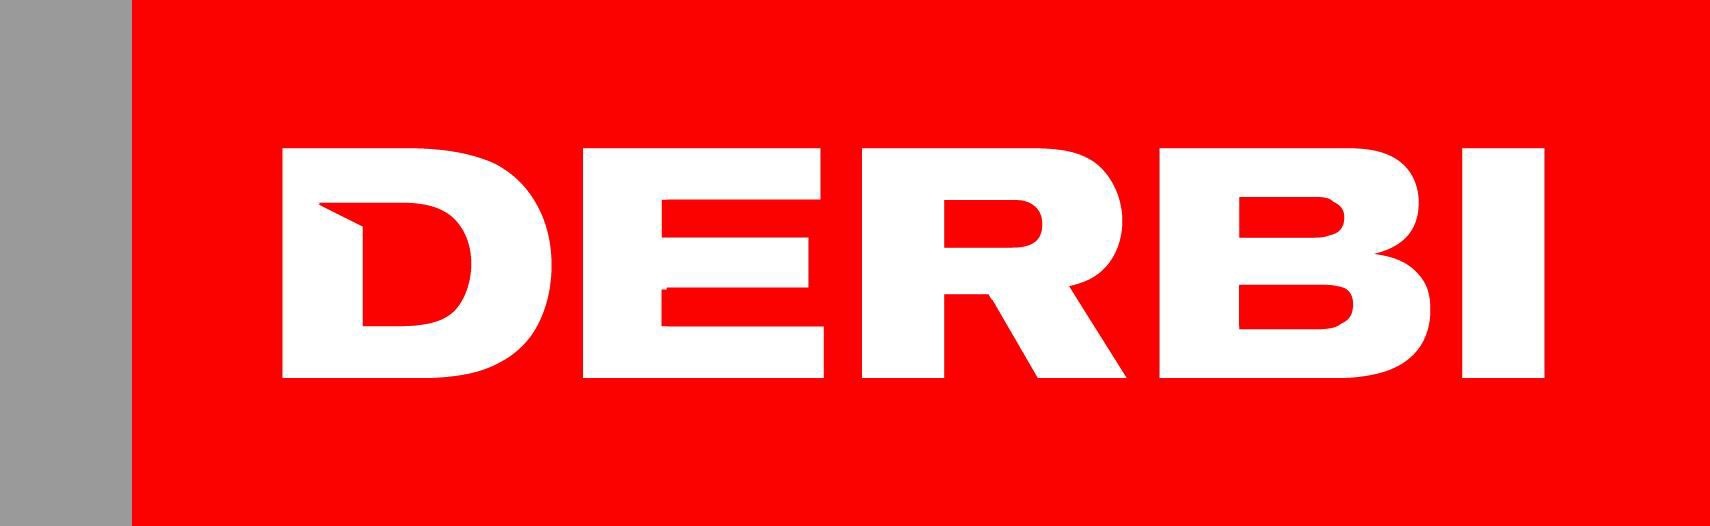 derbi_logo